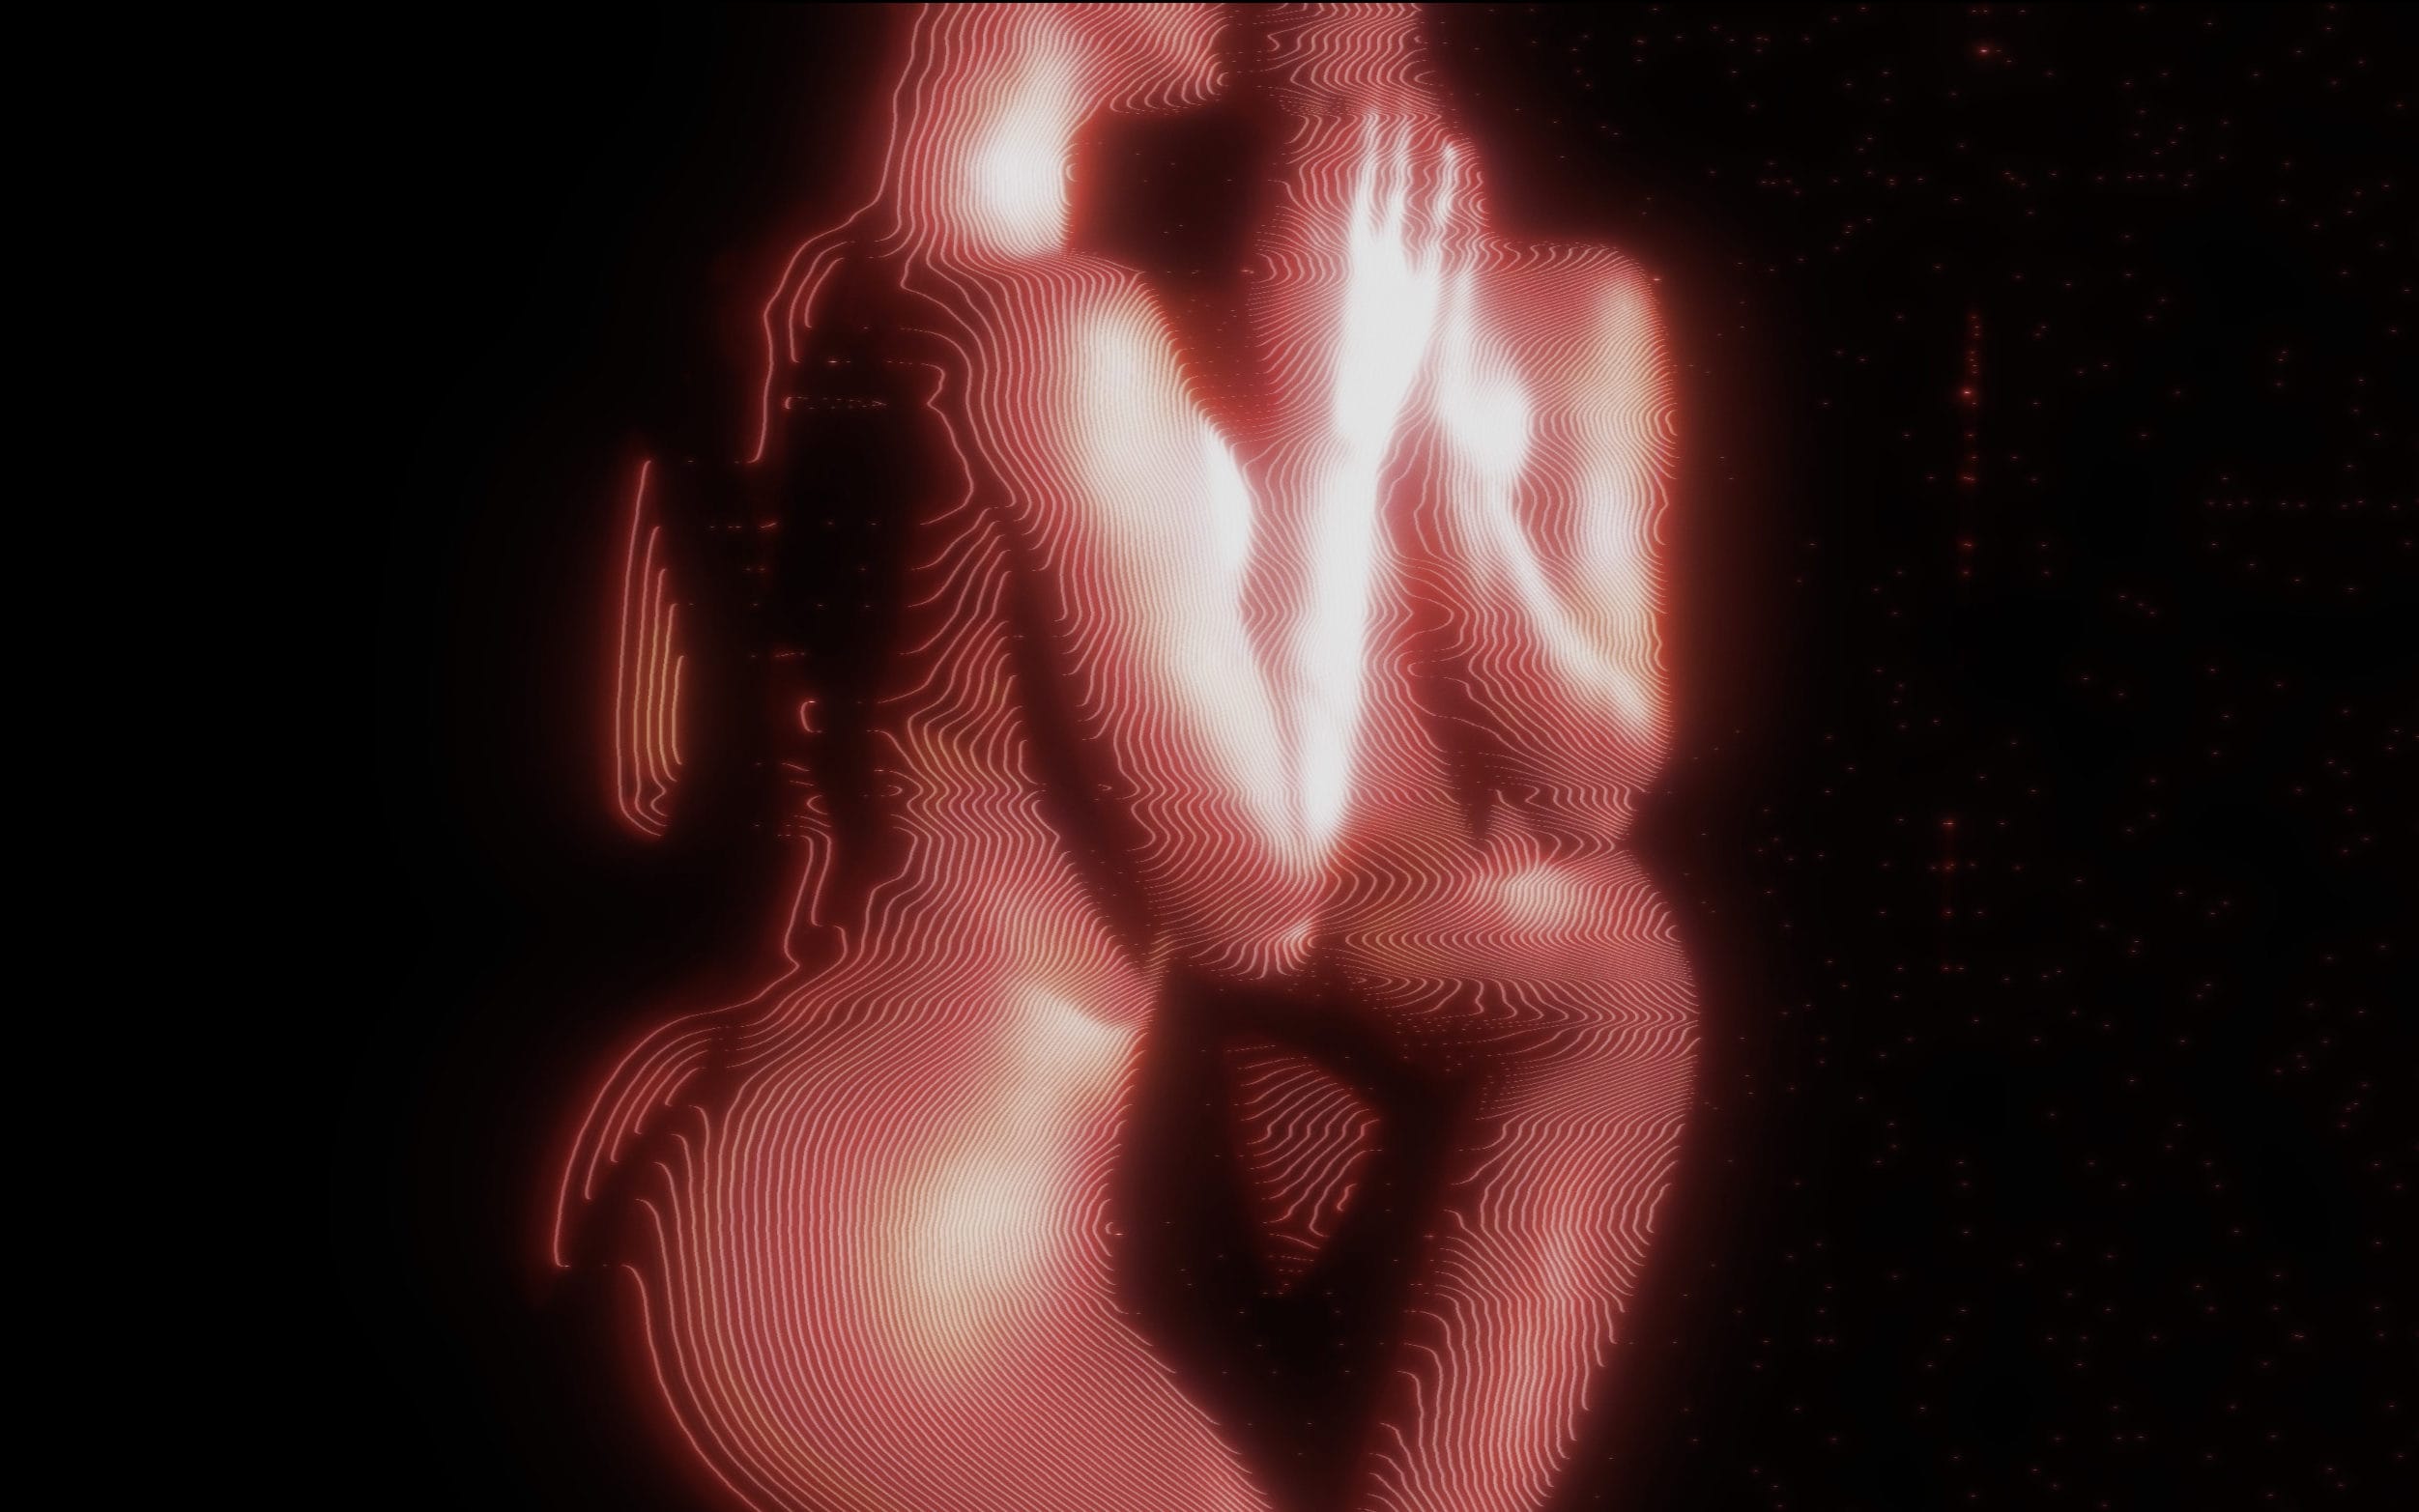 extrait du clip divine créature, réalisé par Polygon 1993, en collaboration avec le couple LeoLulu, connu notamment pour leur activité sur pornhub.
le corps de la femme se devine à travers les lignes rouges qui le compose